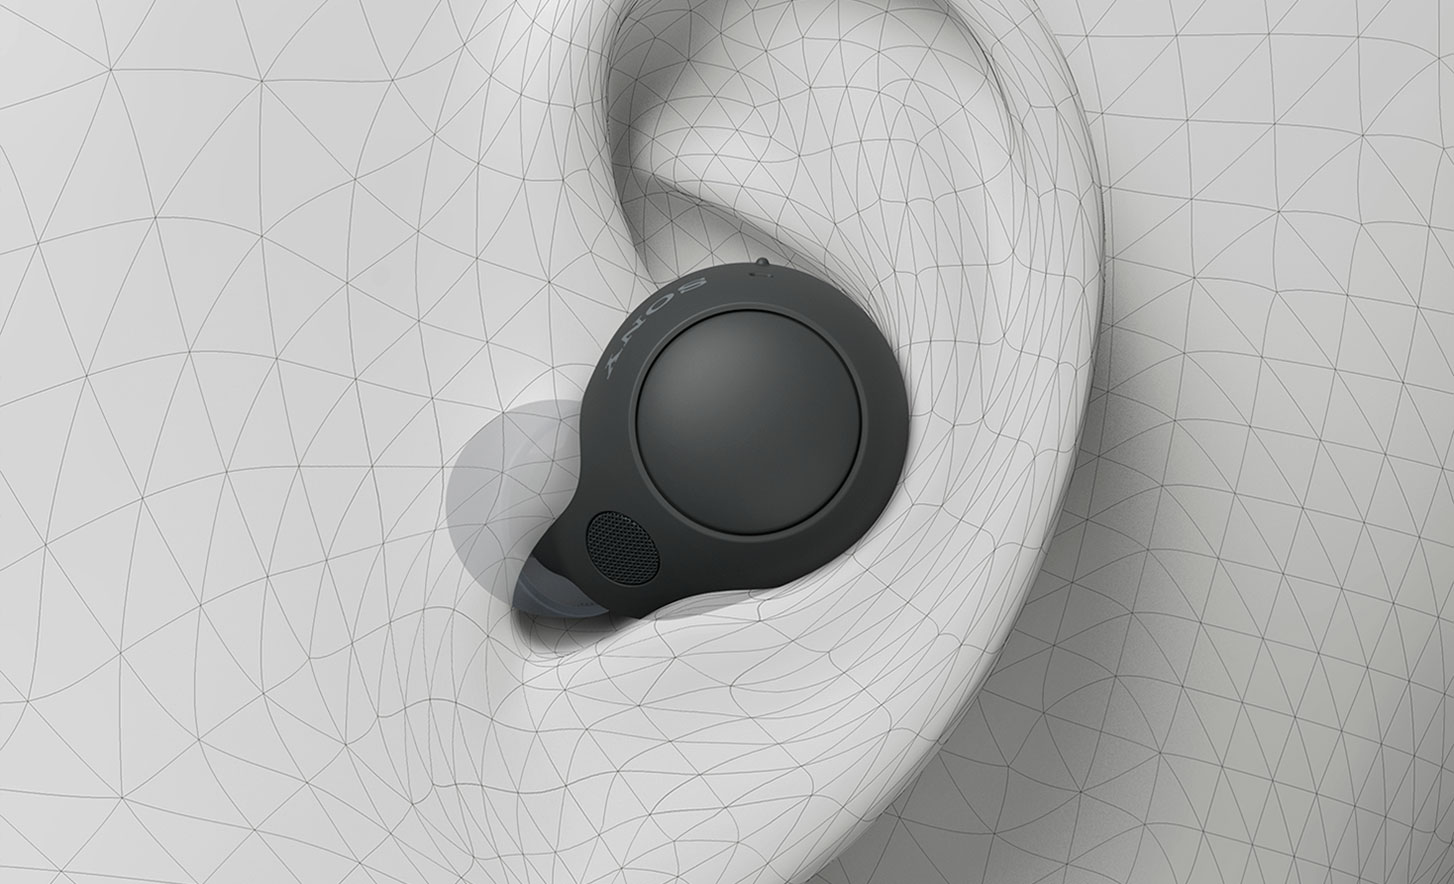 תמונה של אוזנייה אלחוטית עם ביטול רעשים WF-C700N בתוך אוזן שנוצרה על ידי מחשב